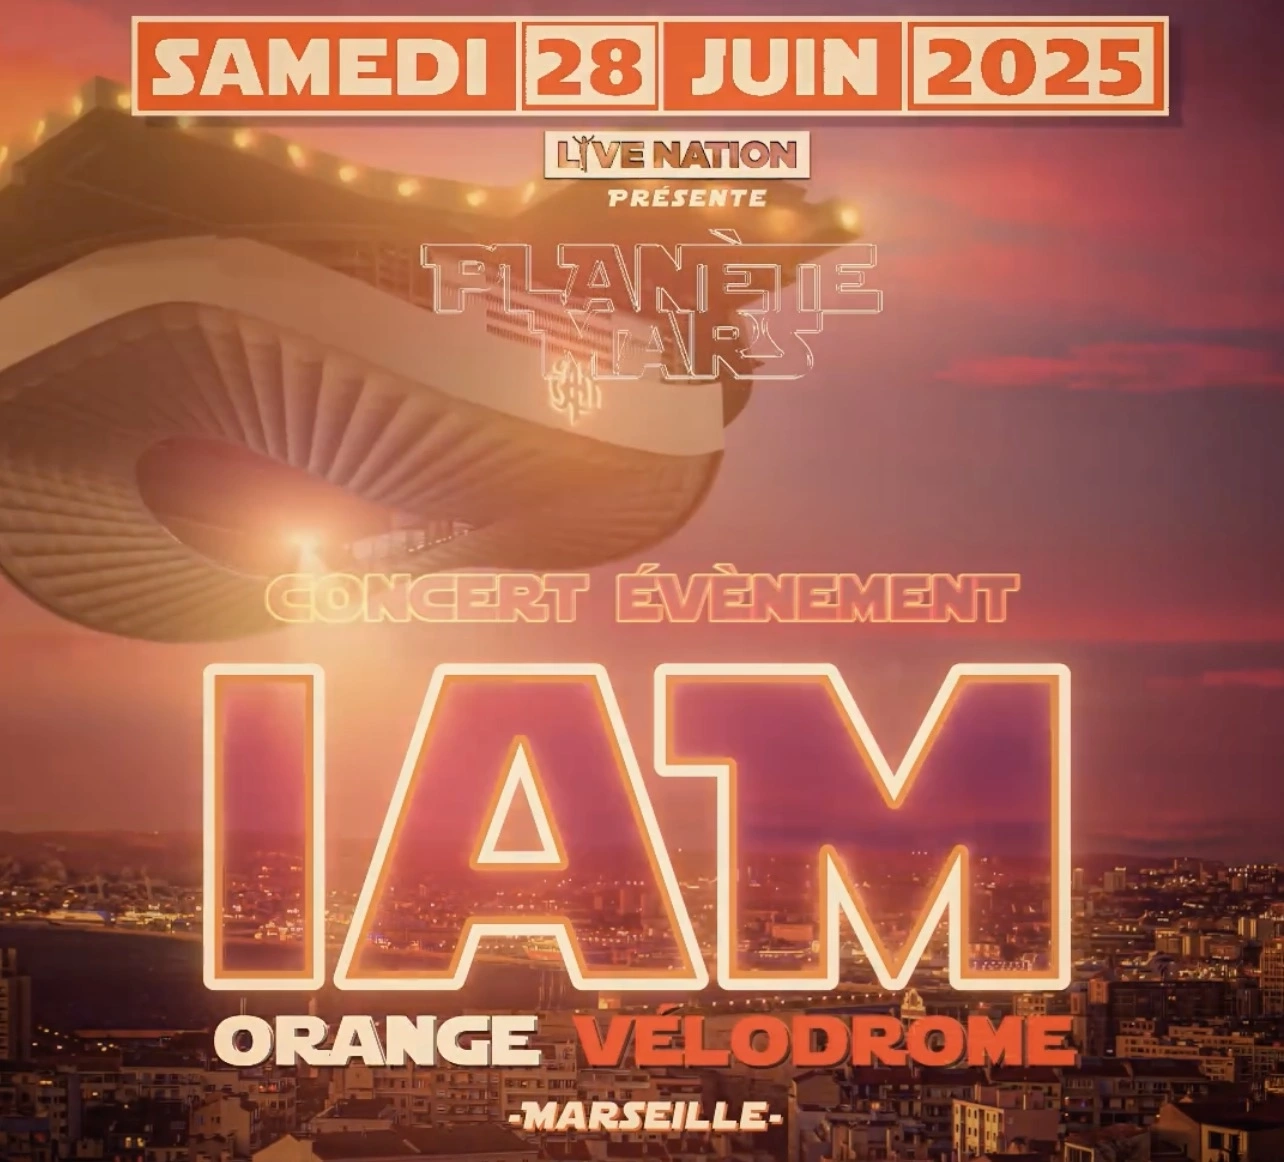 Concert d'IAM à Marseille : les infos billetterie pour le concert du 28 juin 2025